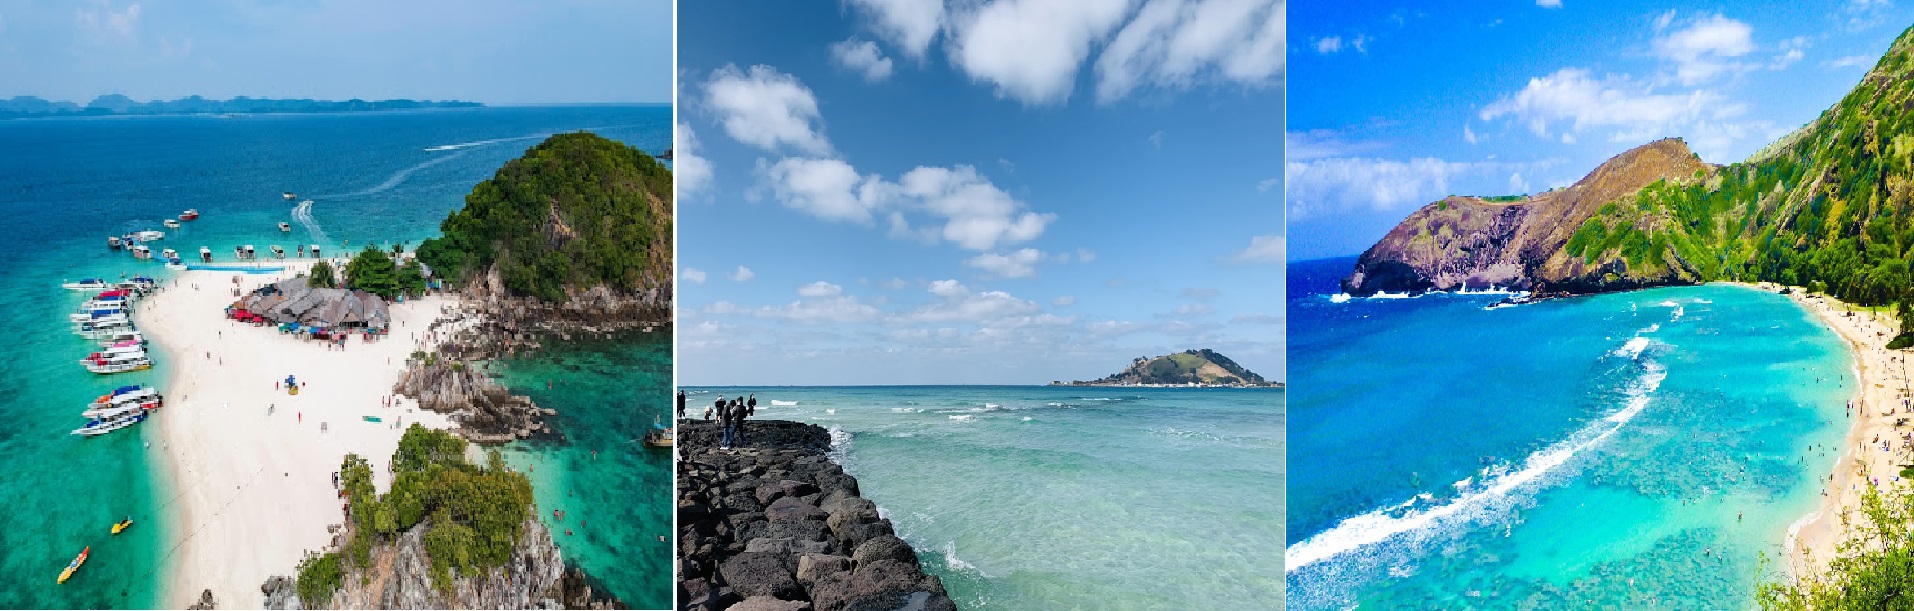 Bãi Kem - nơi lọt top 50 bãi biển đẹp nhất hành tinh do CNN bình chọn